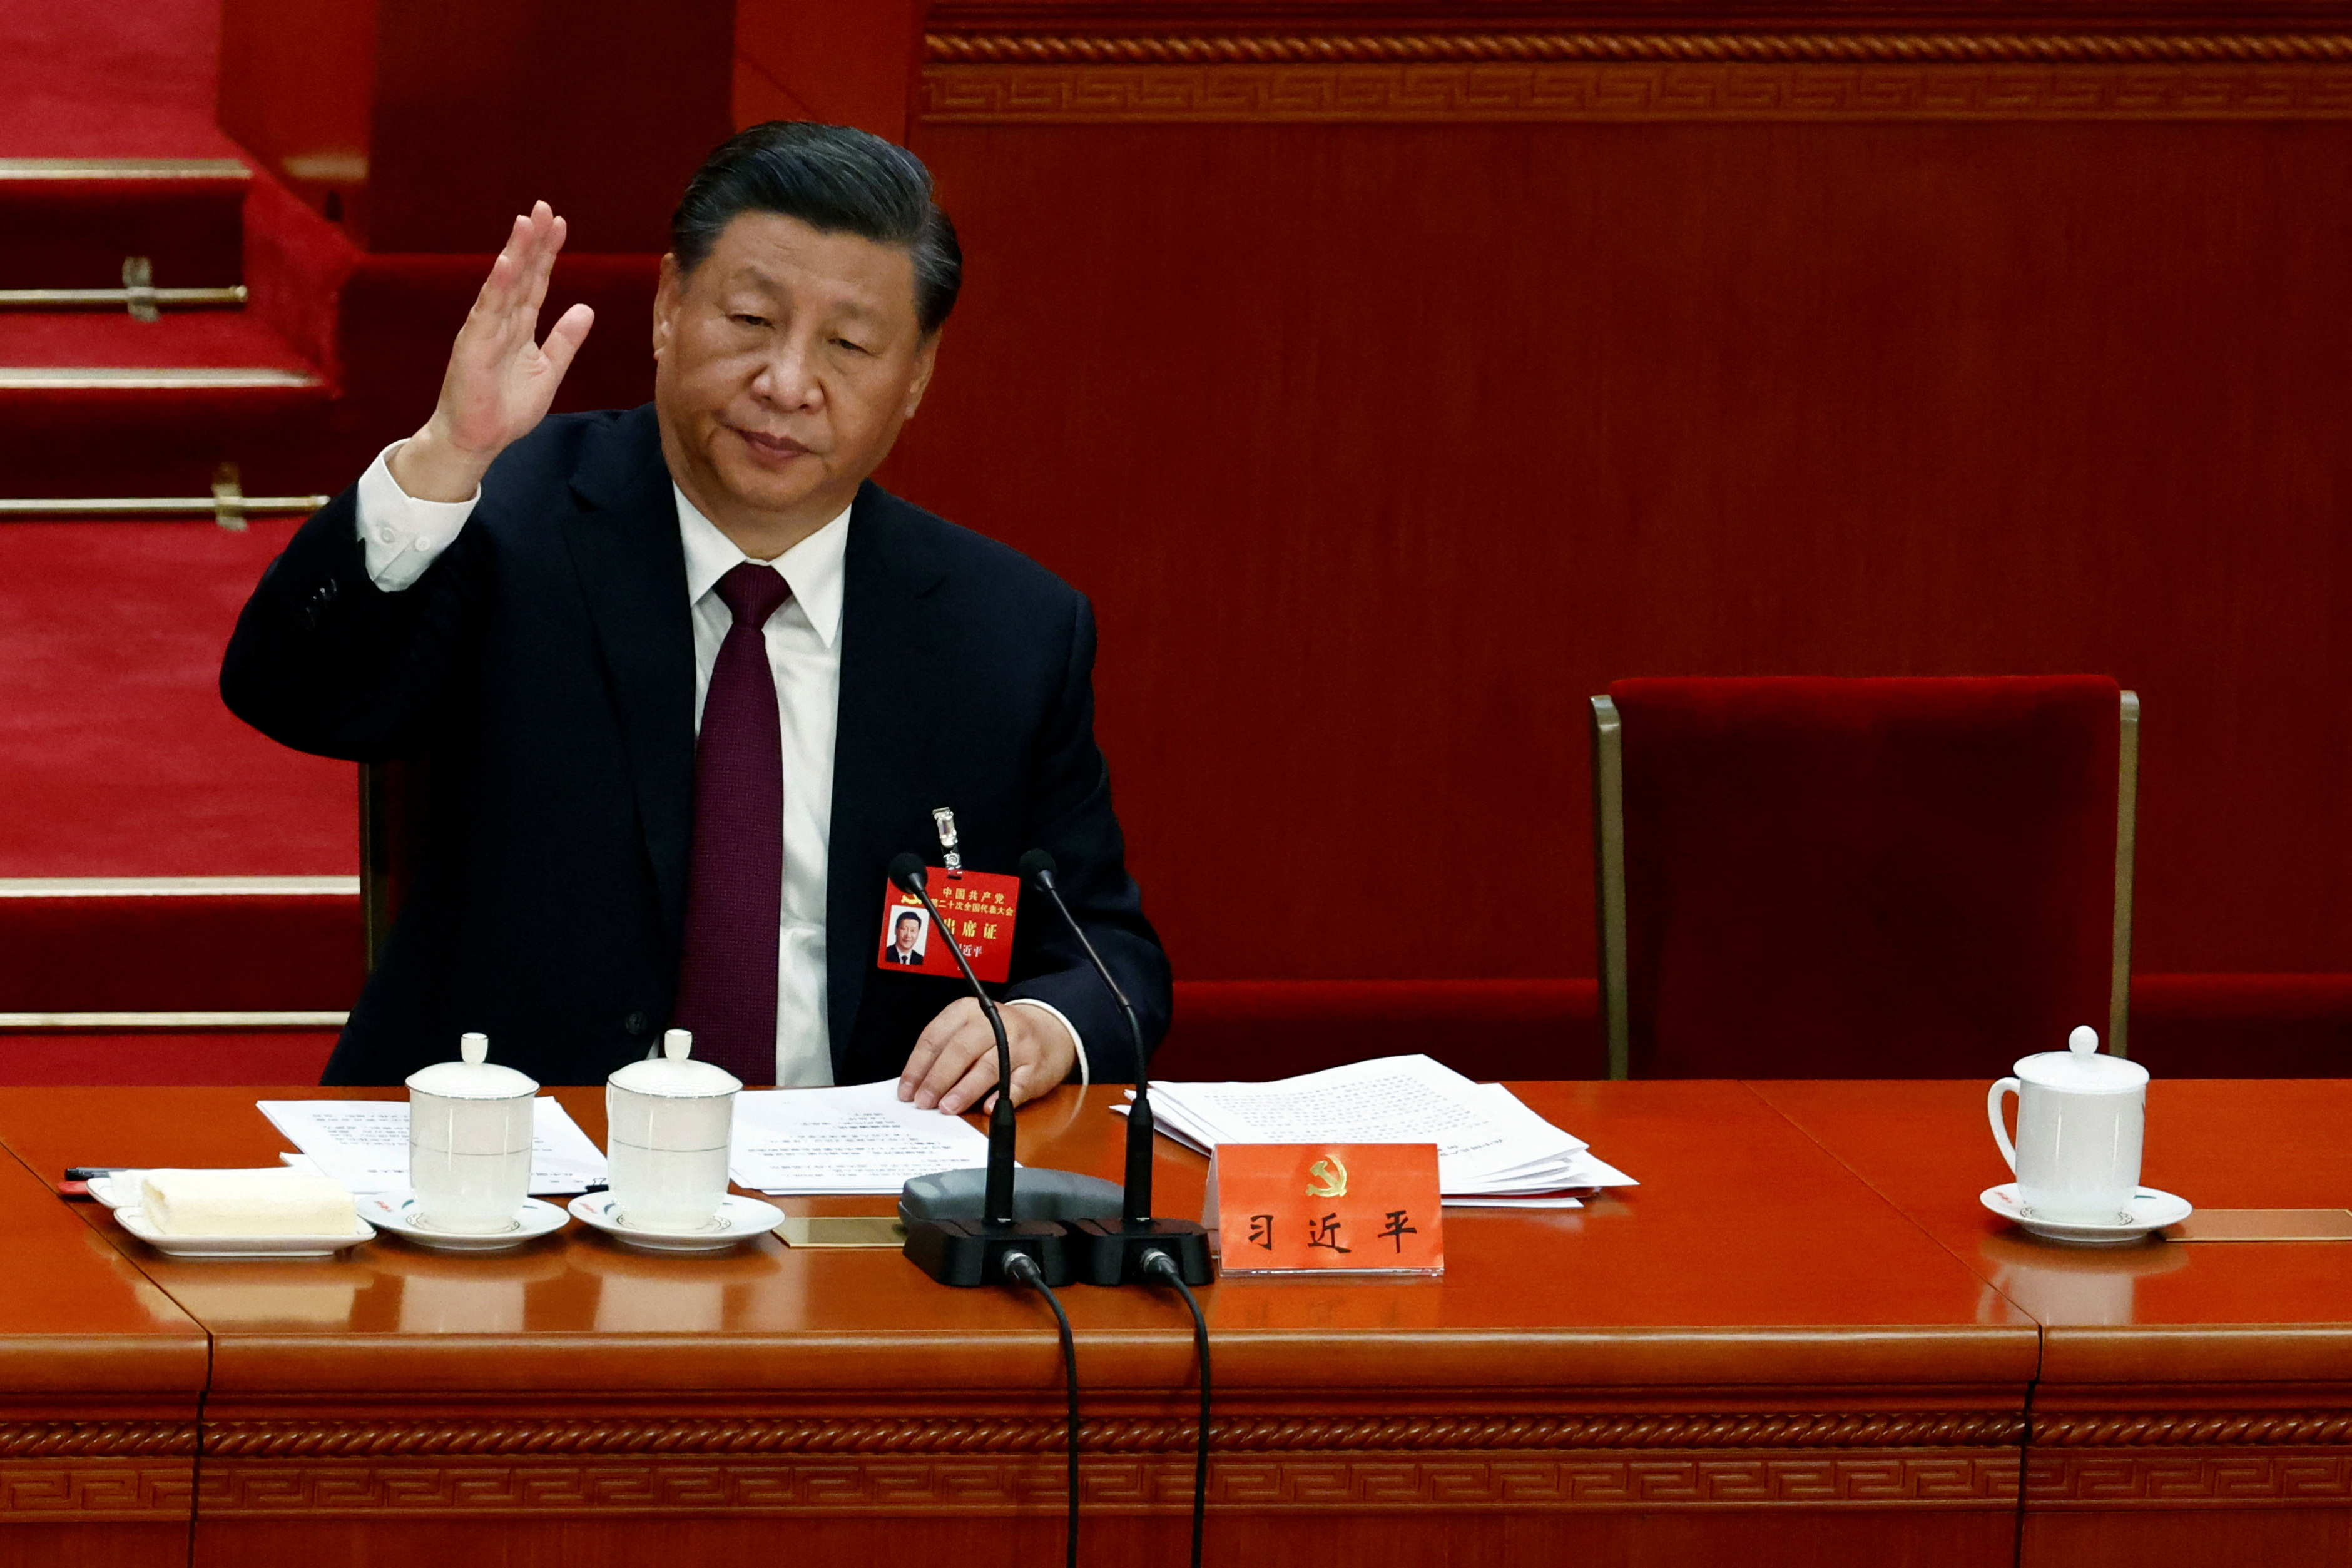 El jefe del régimen de China, Xi Jinping durante la clausura del Congreso del Partido Comunista Chino, con la silla vacía a su izquierda tras la expulsión del ex mandatario Hu Jintao